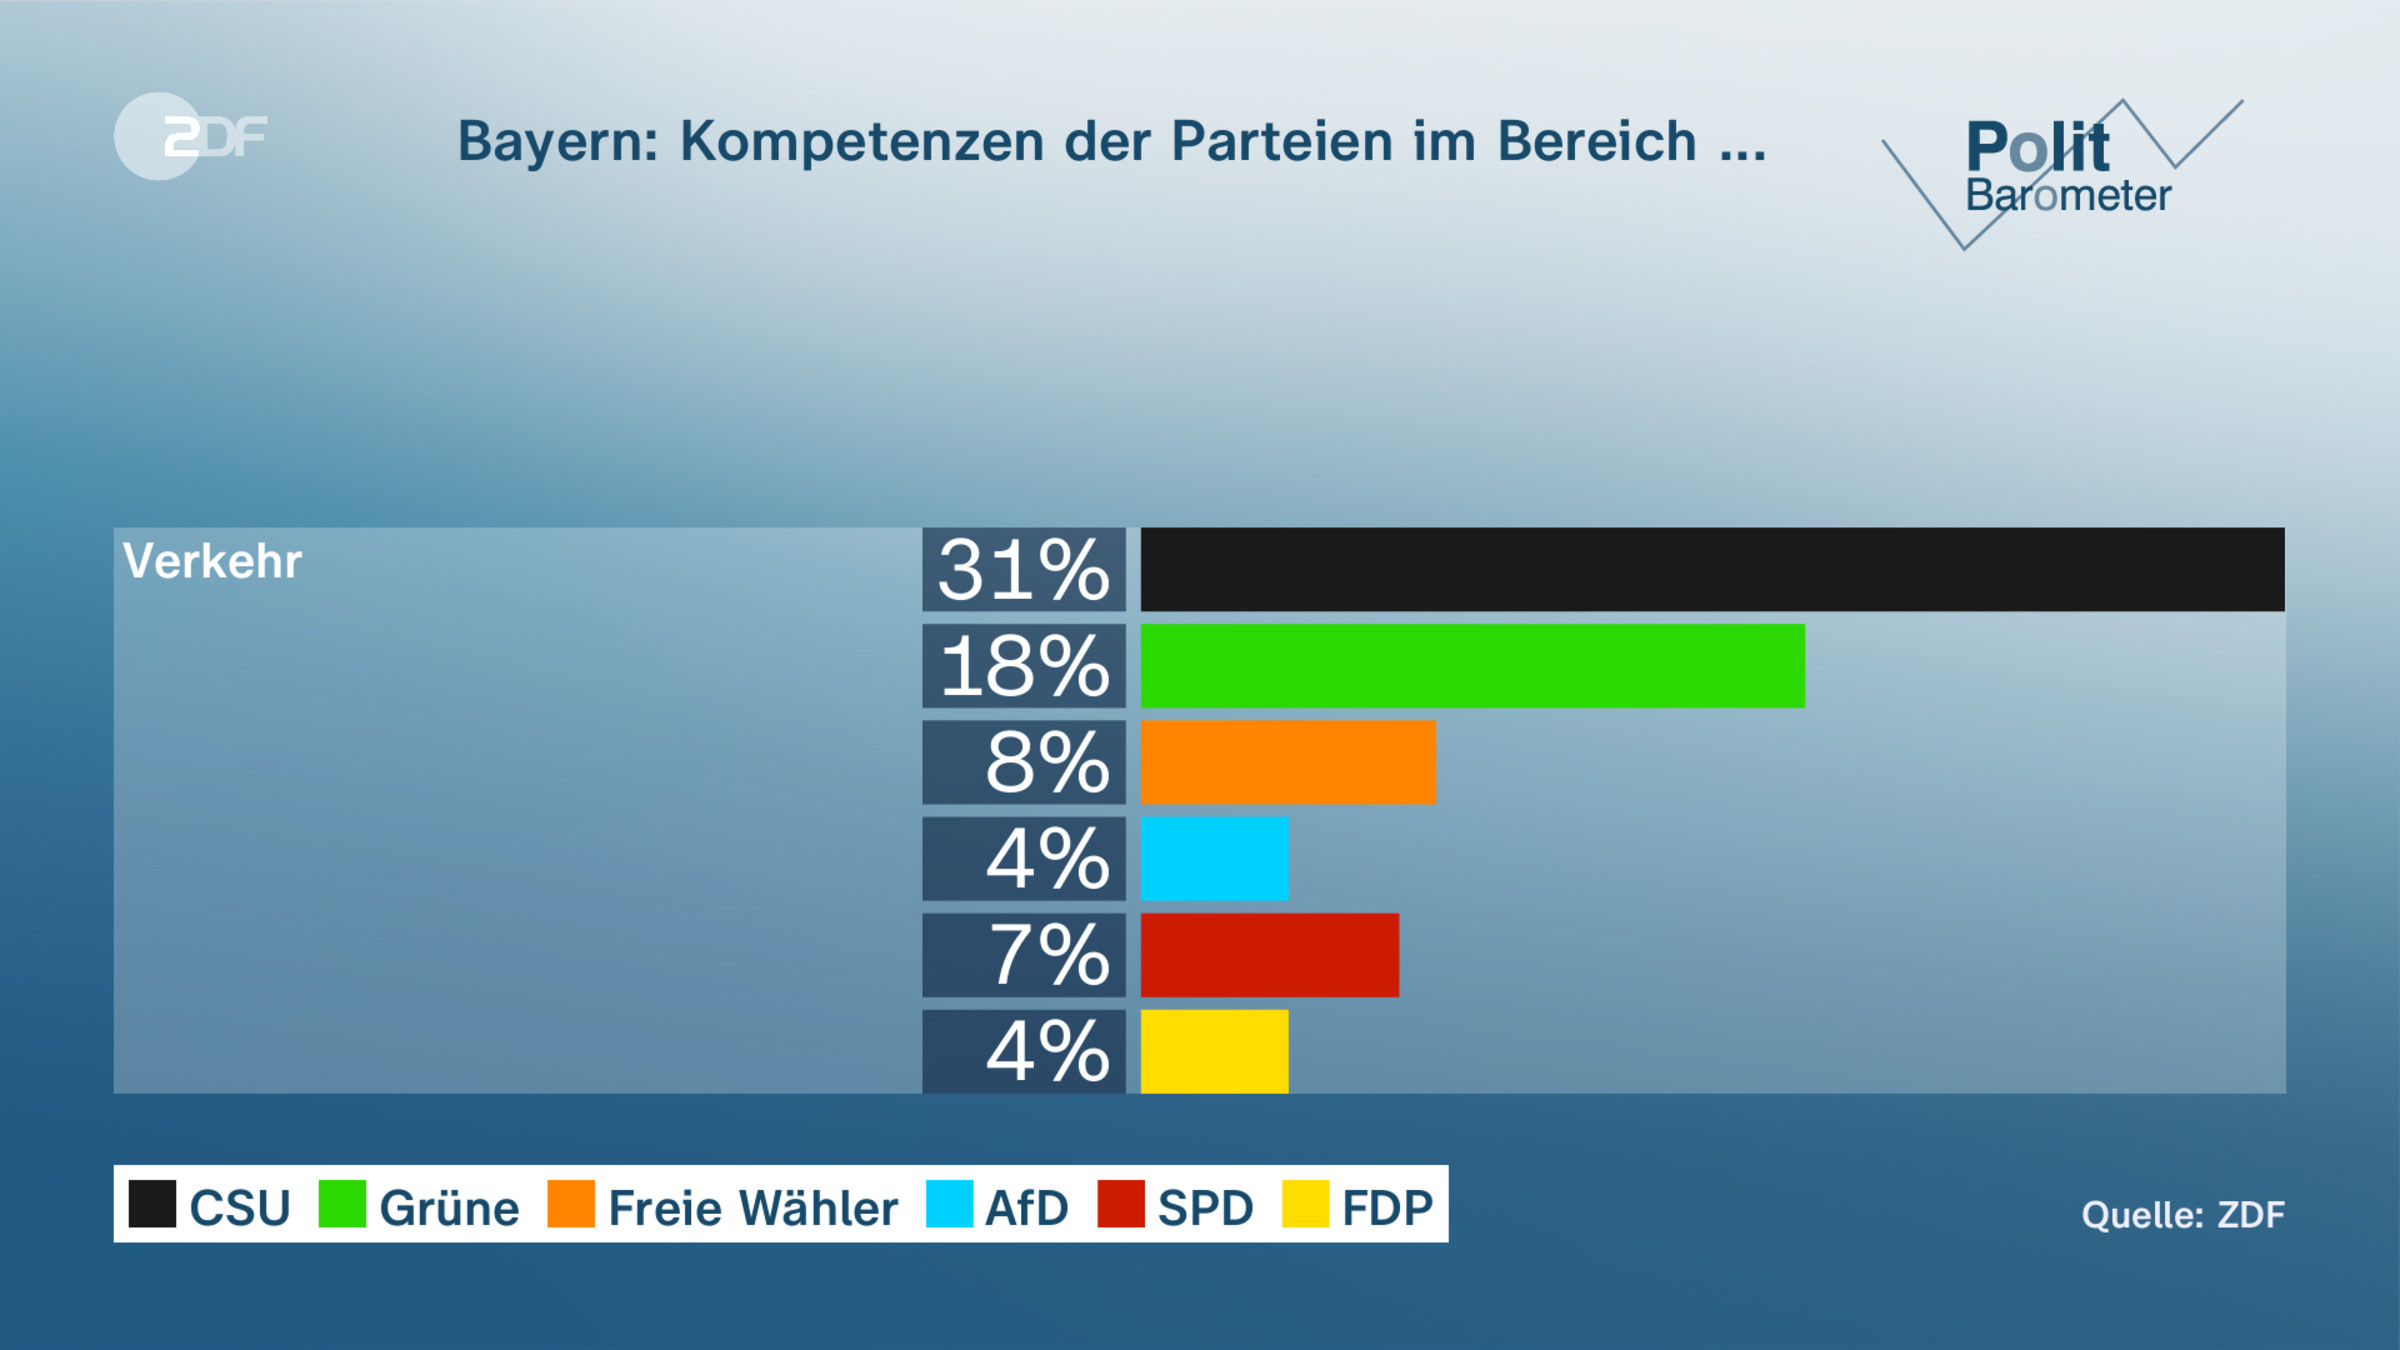 Bayern: Kompetenzen der Parteien im Bereich ...